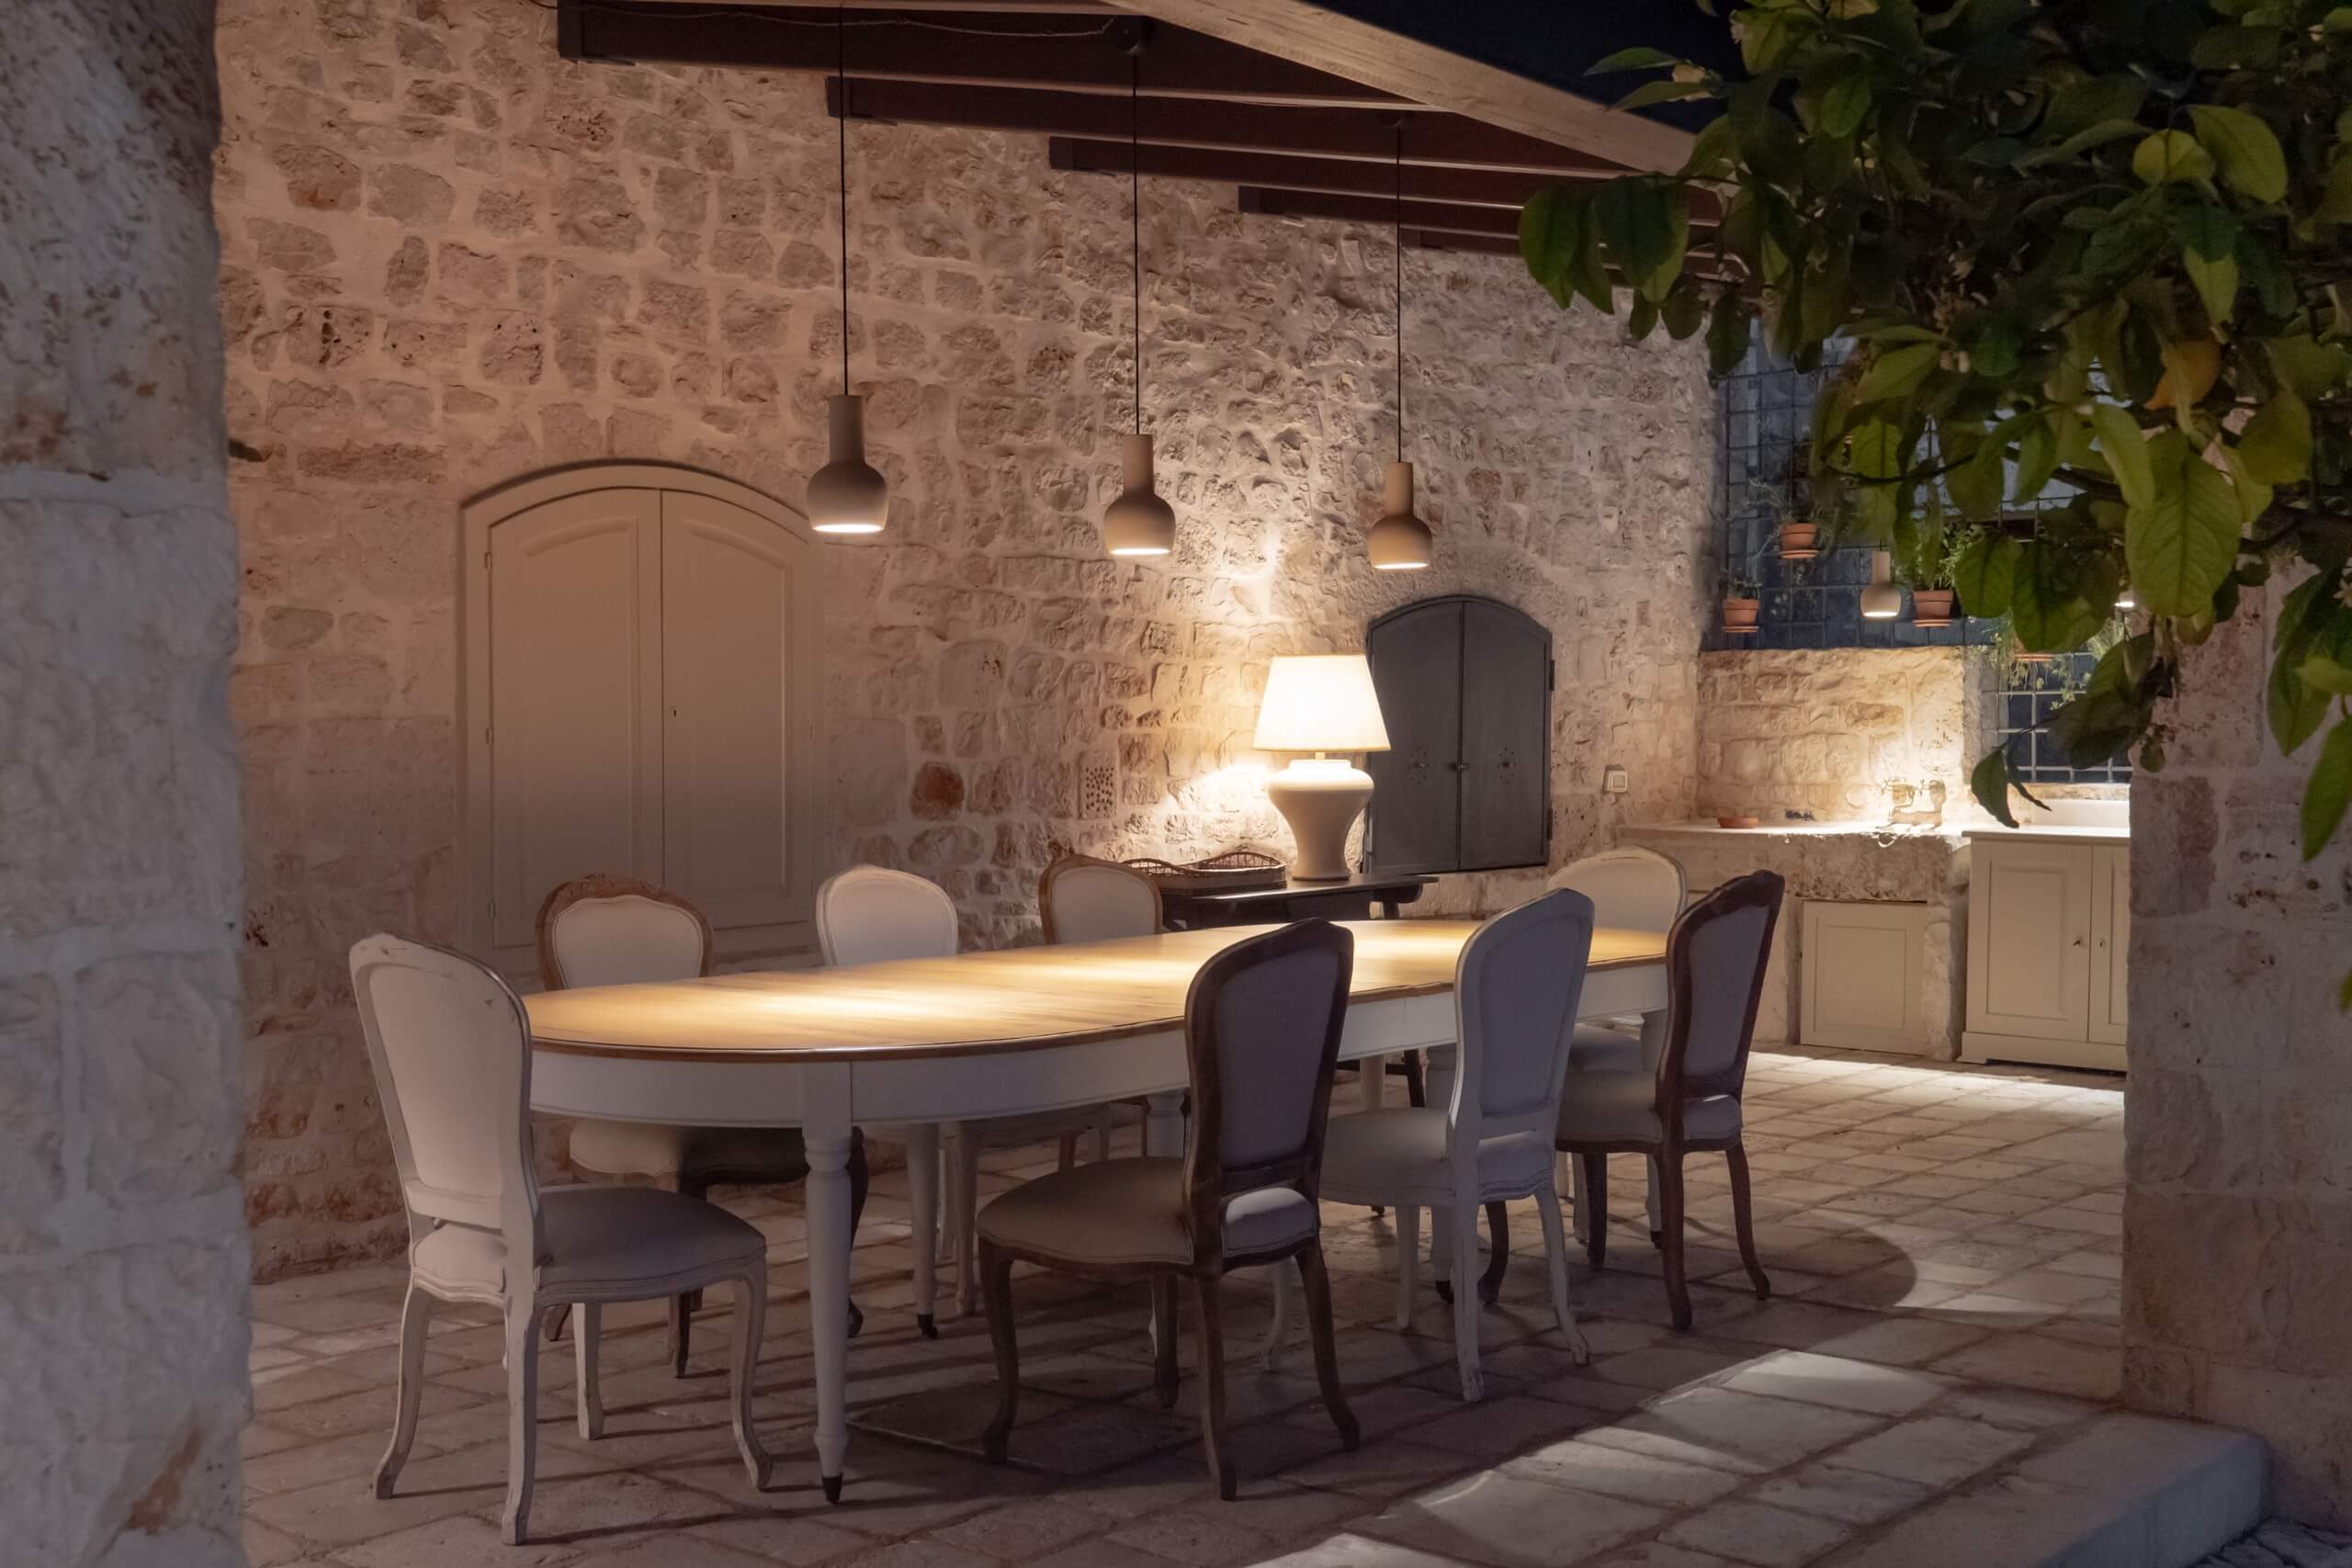 Masseria privata con patio attrezzato di cucina, barbecue e zona living. Puglia. | Masseria della Croce